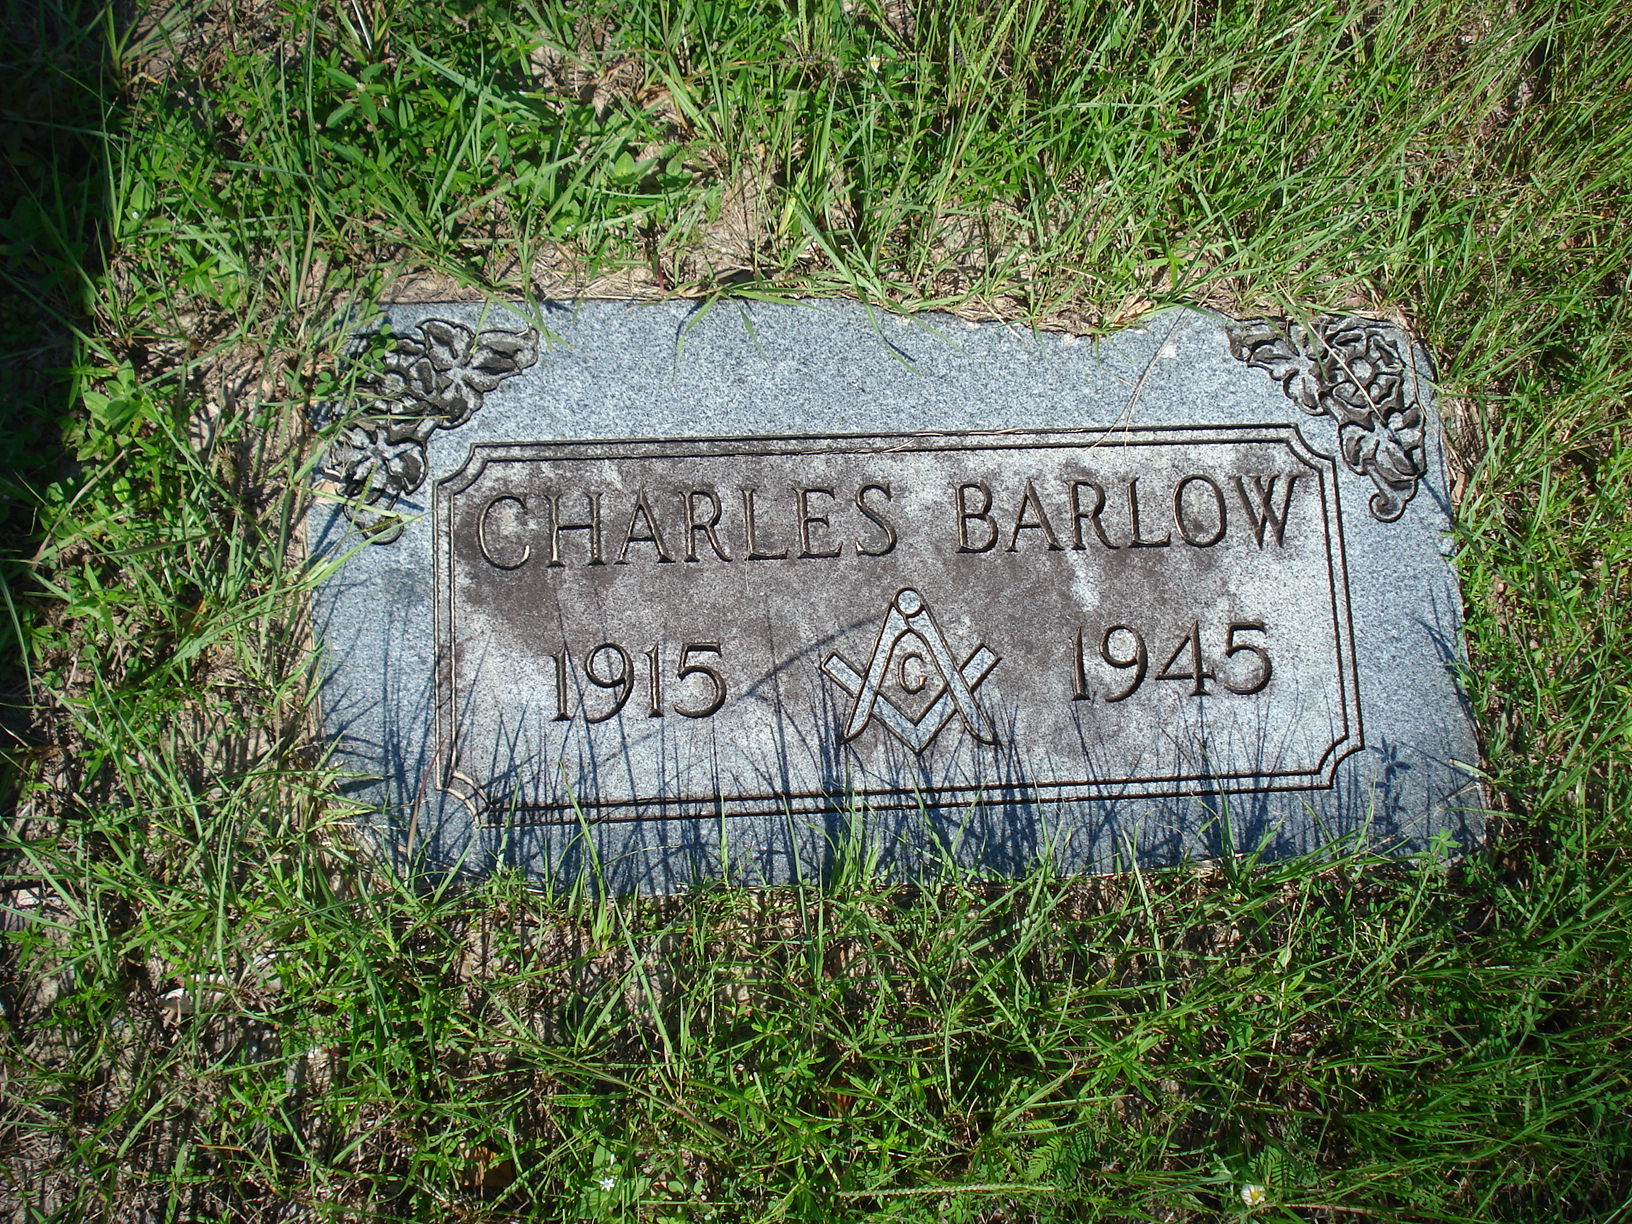 Charles Barlow